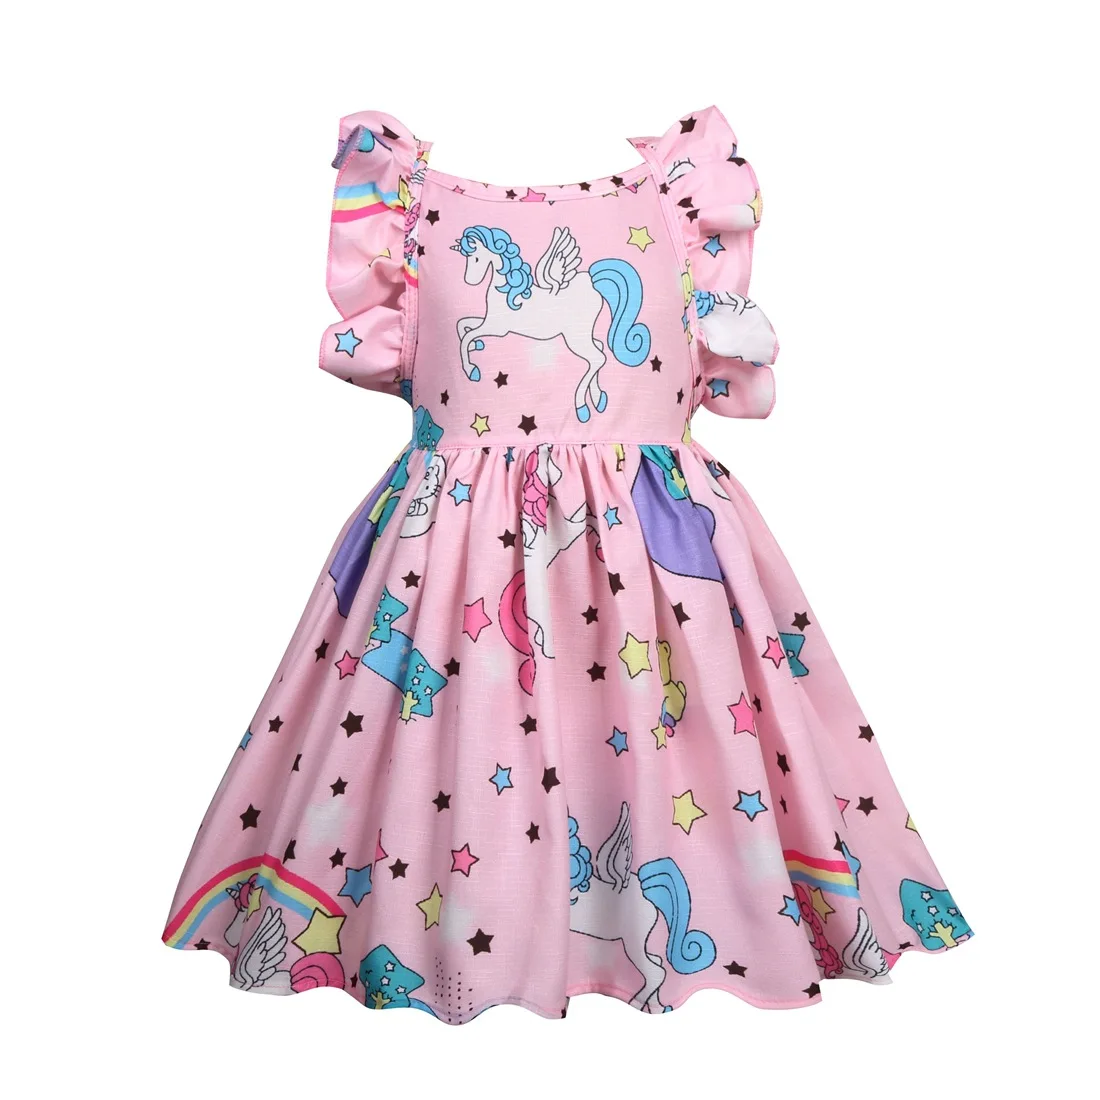 Детское праздничное платье для дня рождения; нарядное платье-пачка с единорогом для маленьких девочек; сарафан принцессы; одежда для костюмированной вечеринки